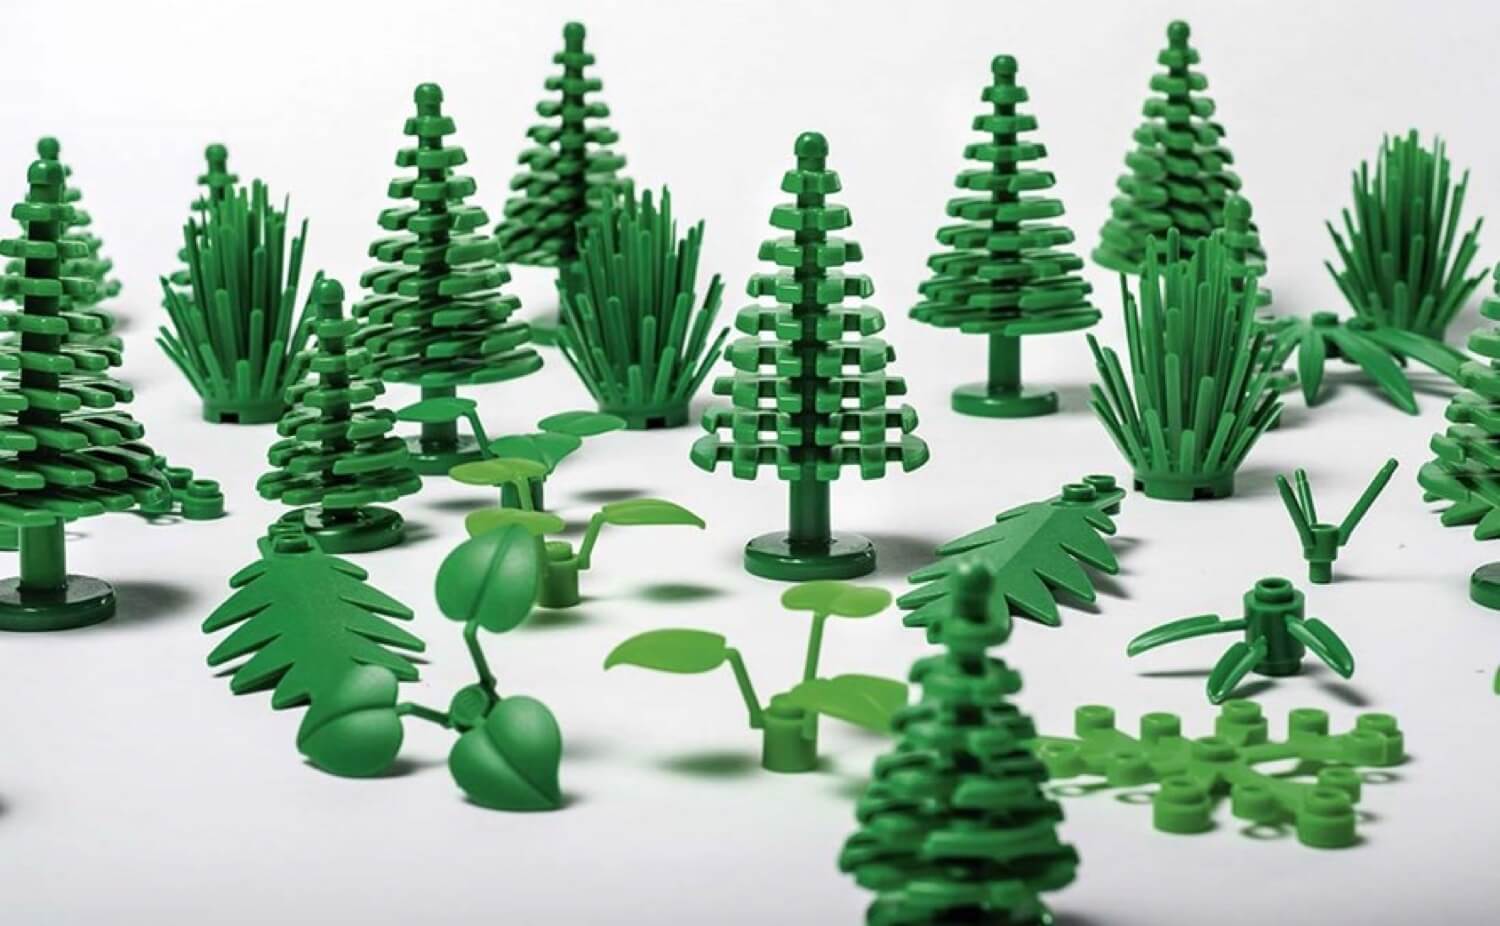 LEGO begann mit der Herstellung Blöcke aus Pflanzen